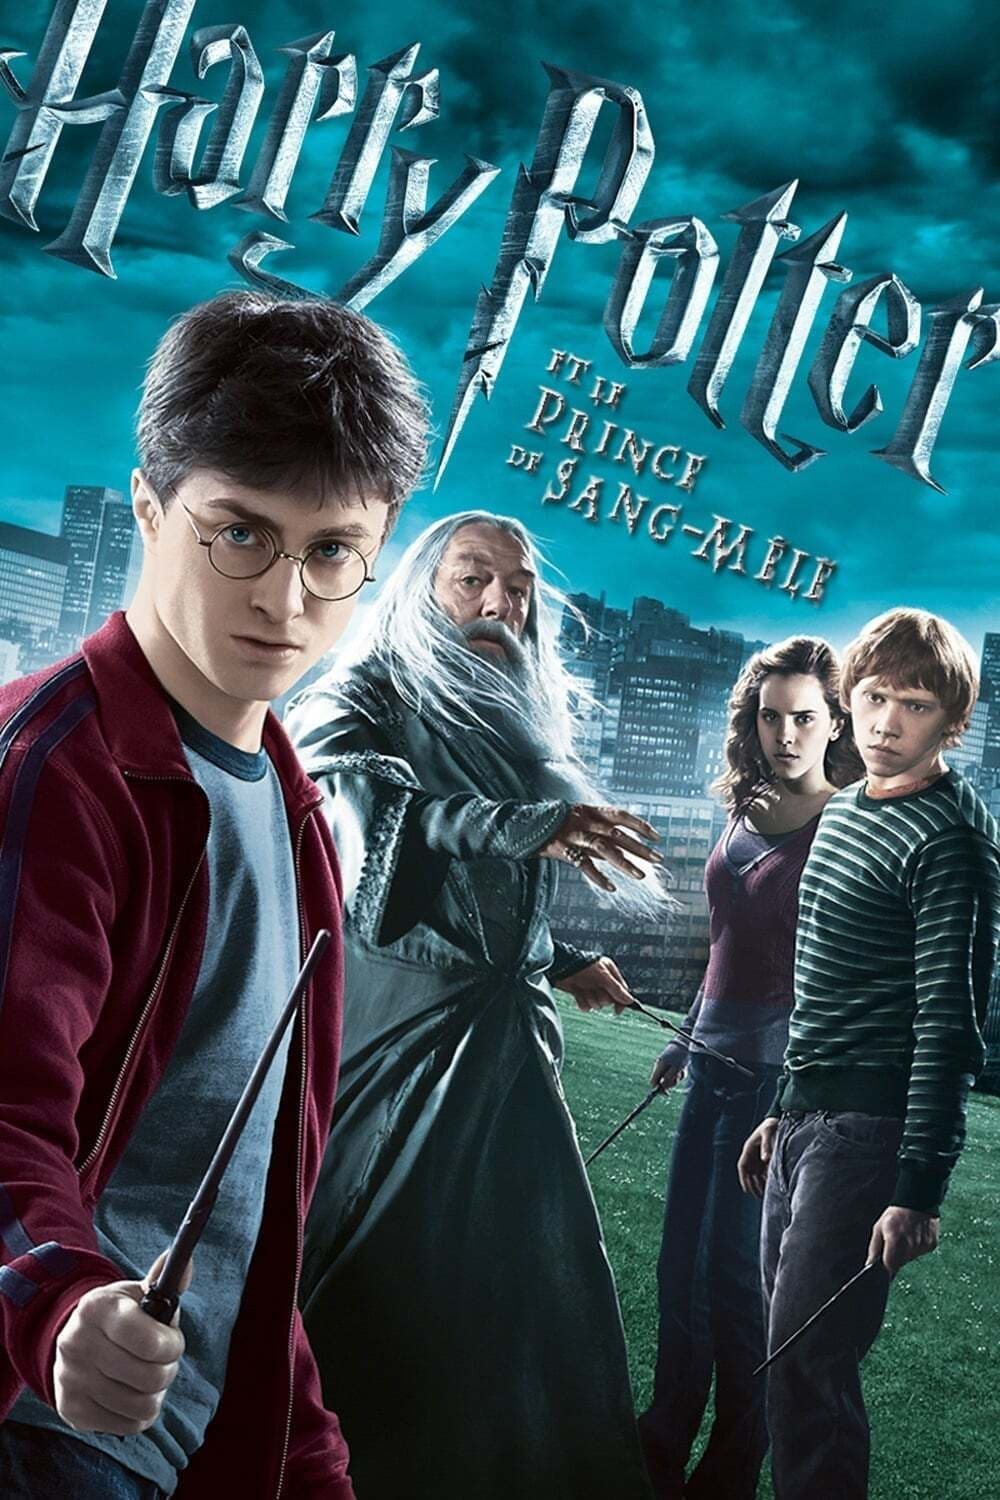 Affiche du film Harry Potter et le Prince de sang-mêlé poster